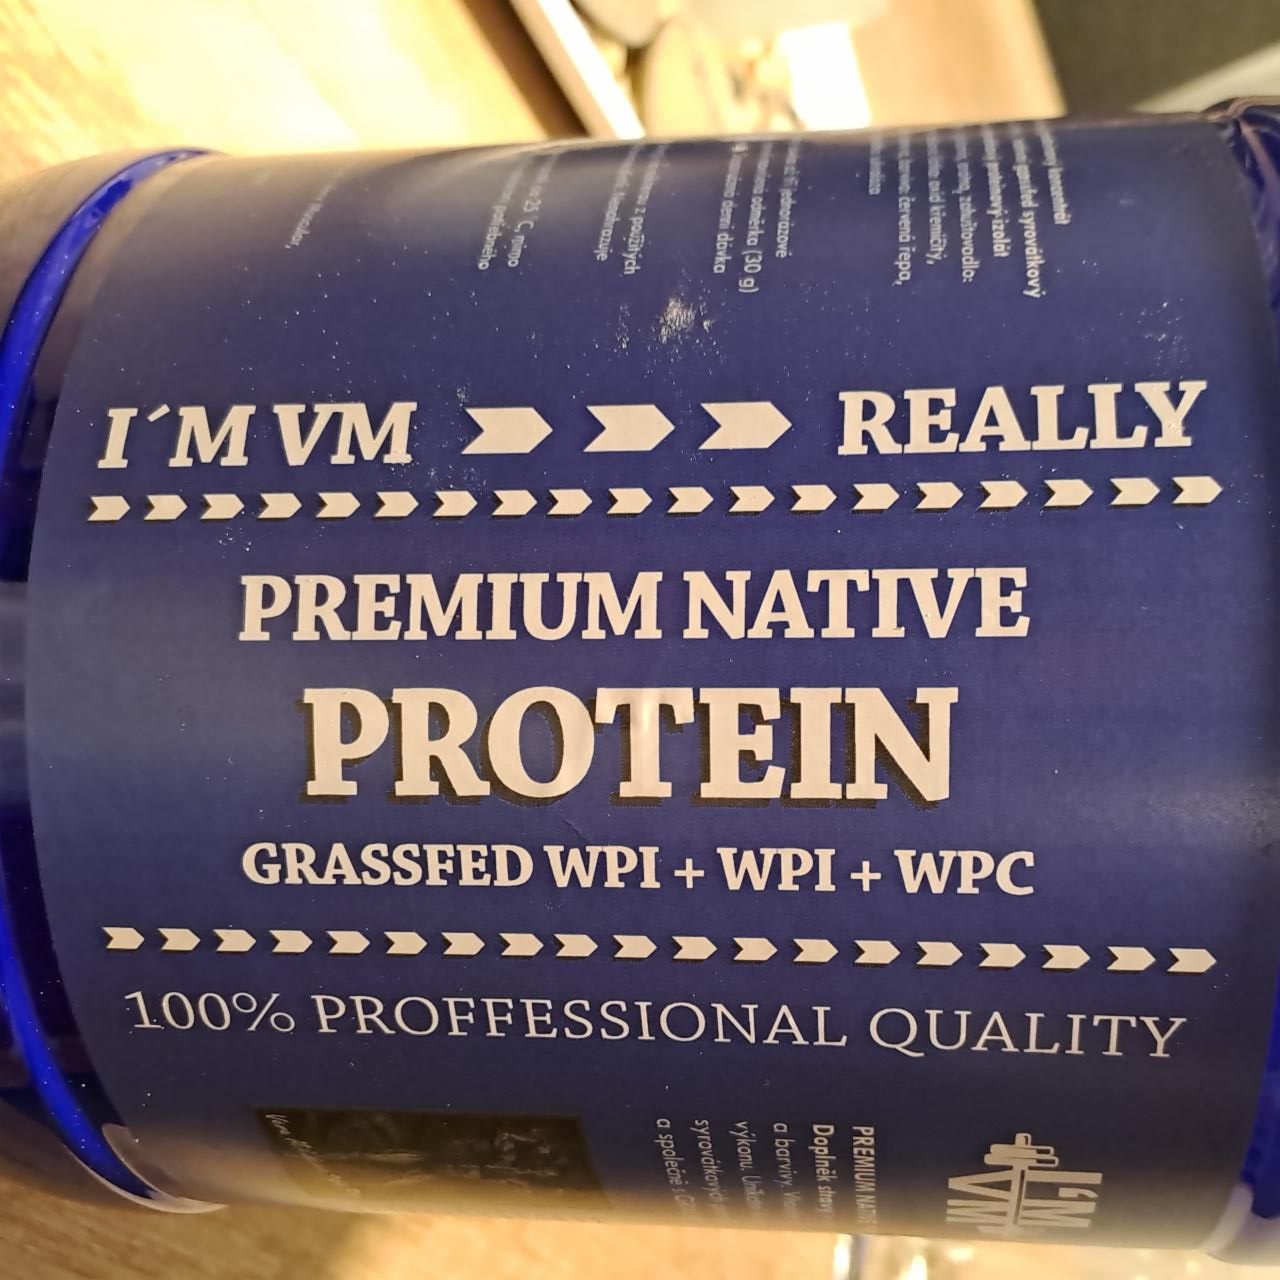 Fotografie - Premium native protein I'M VM